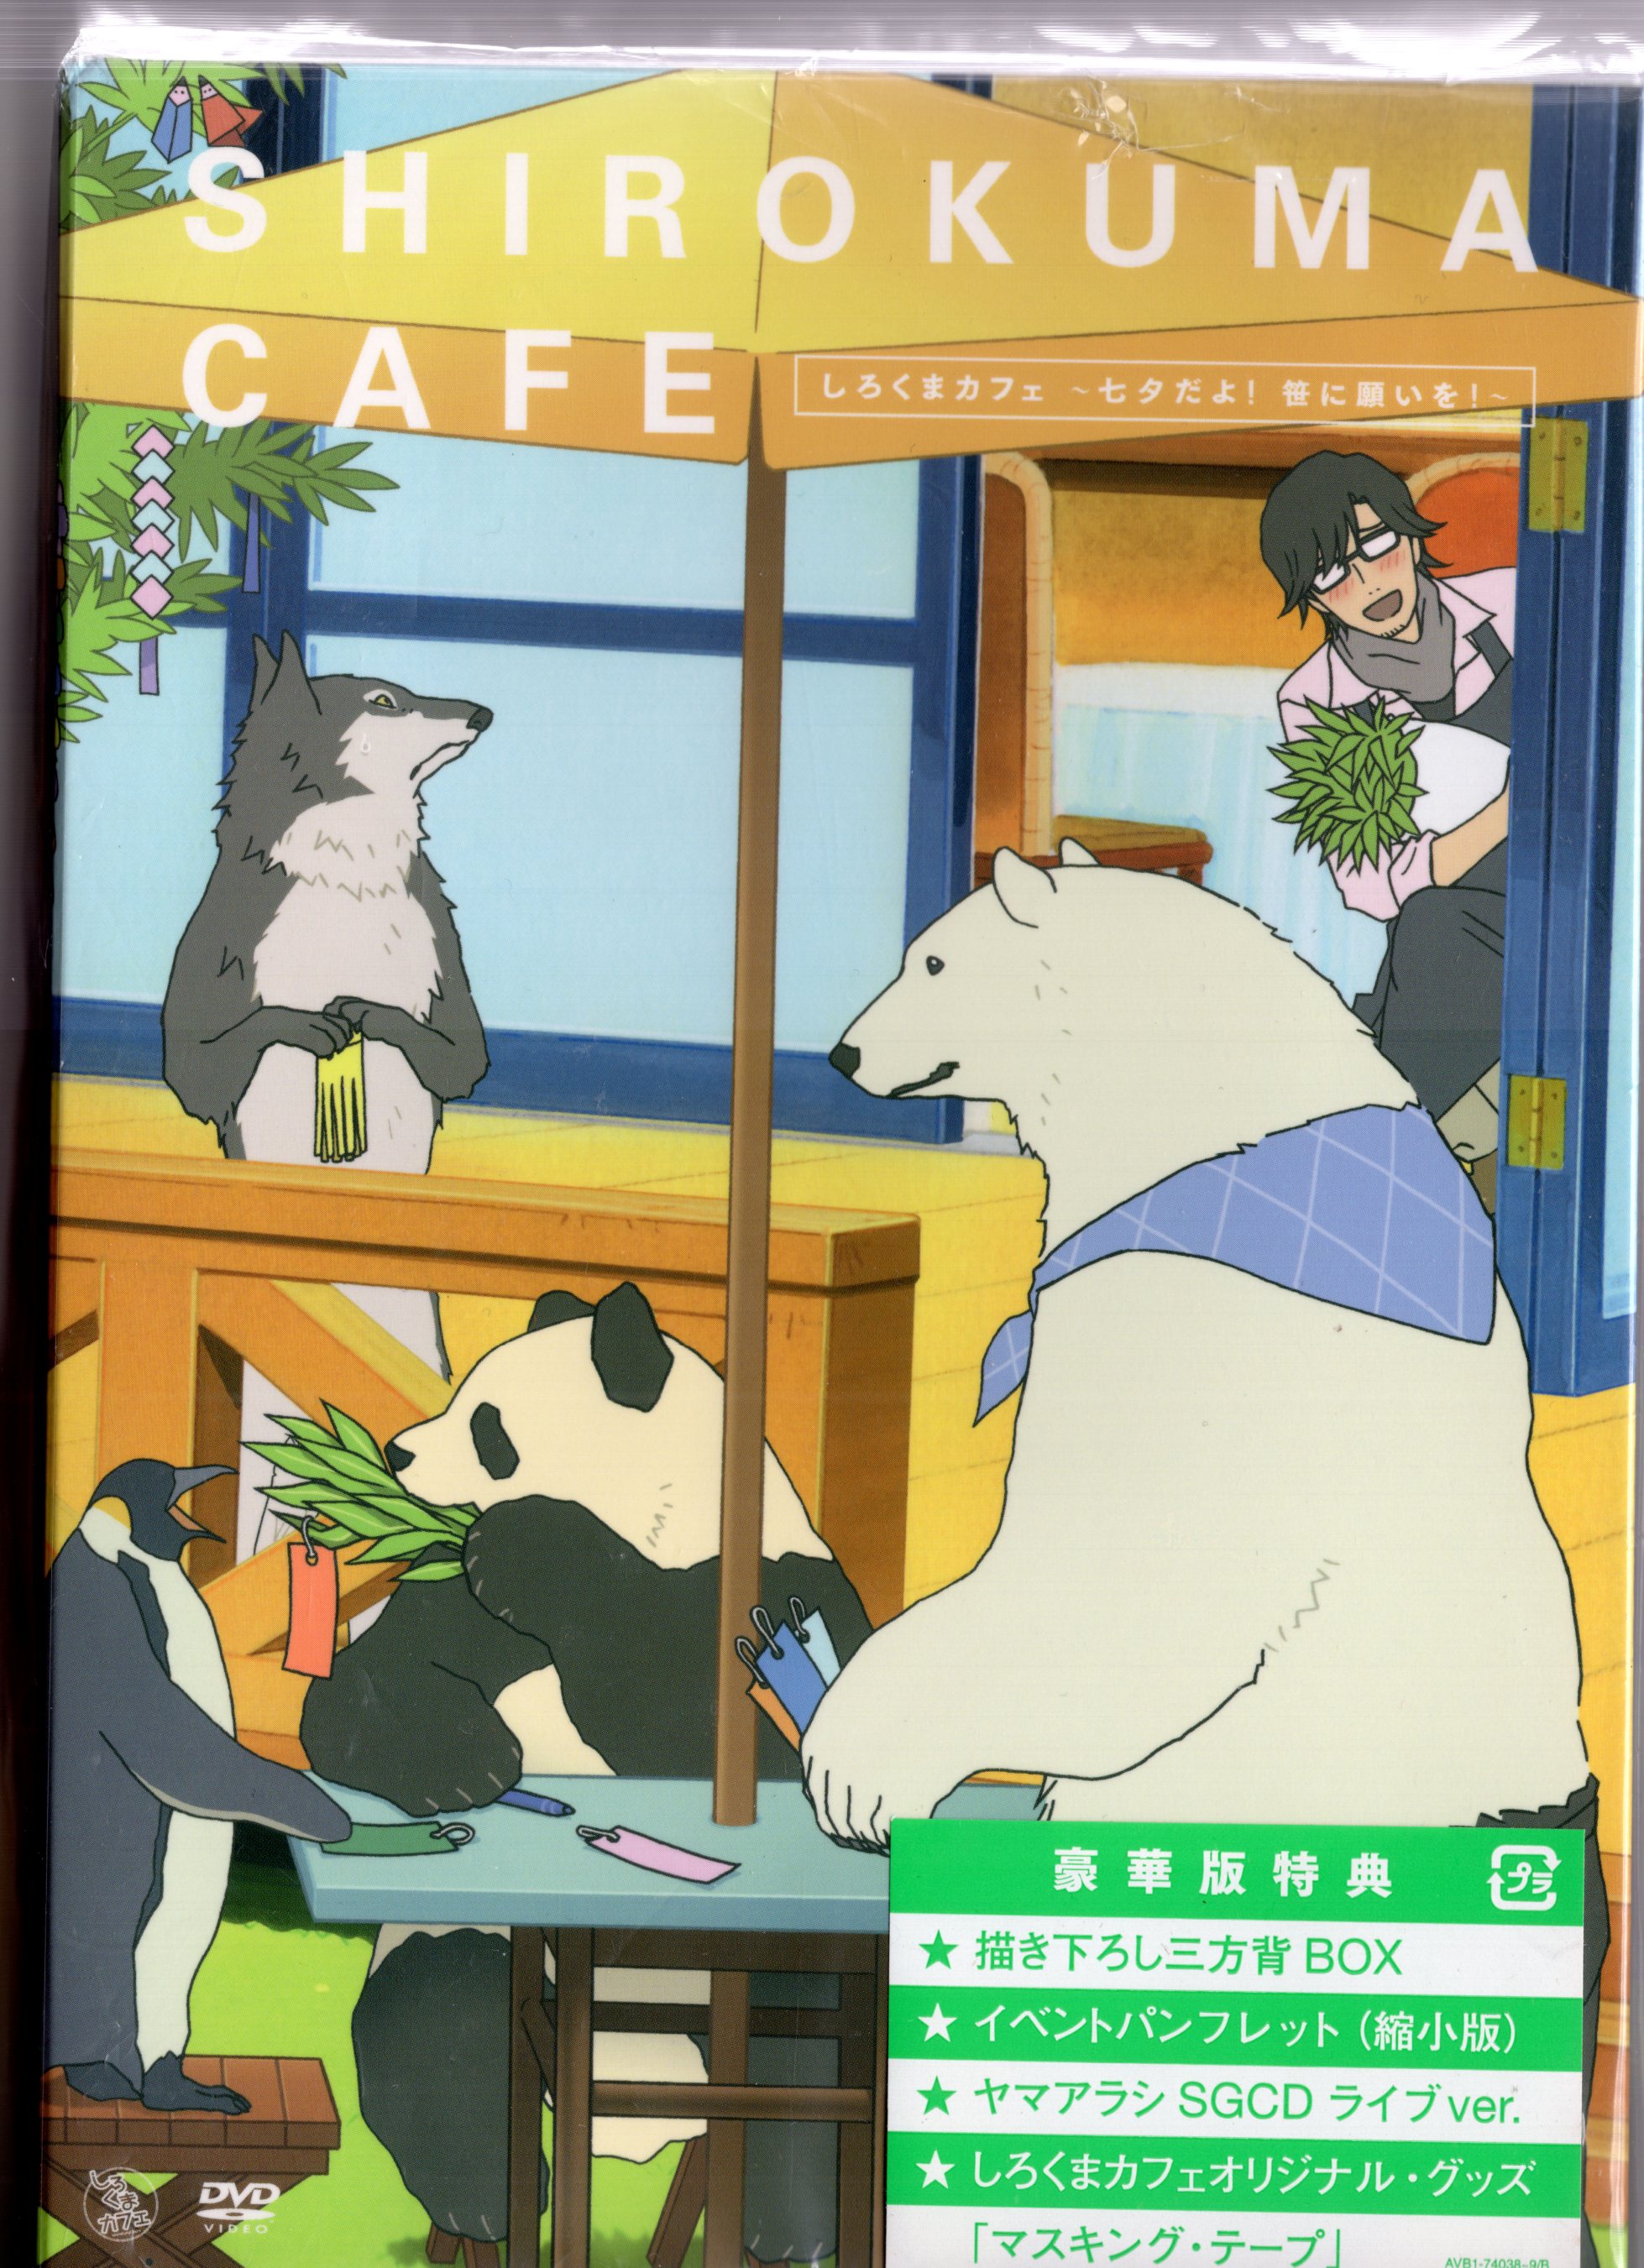 しろくまカフェ cafe.7 [DVD] i8my1cf